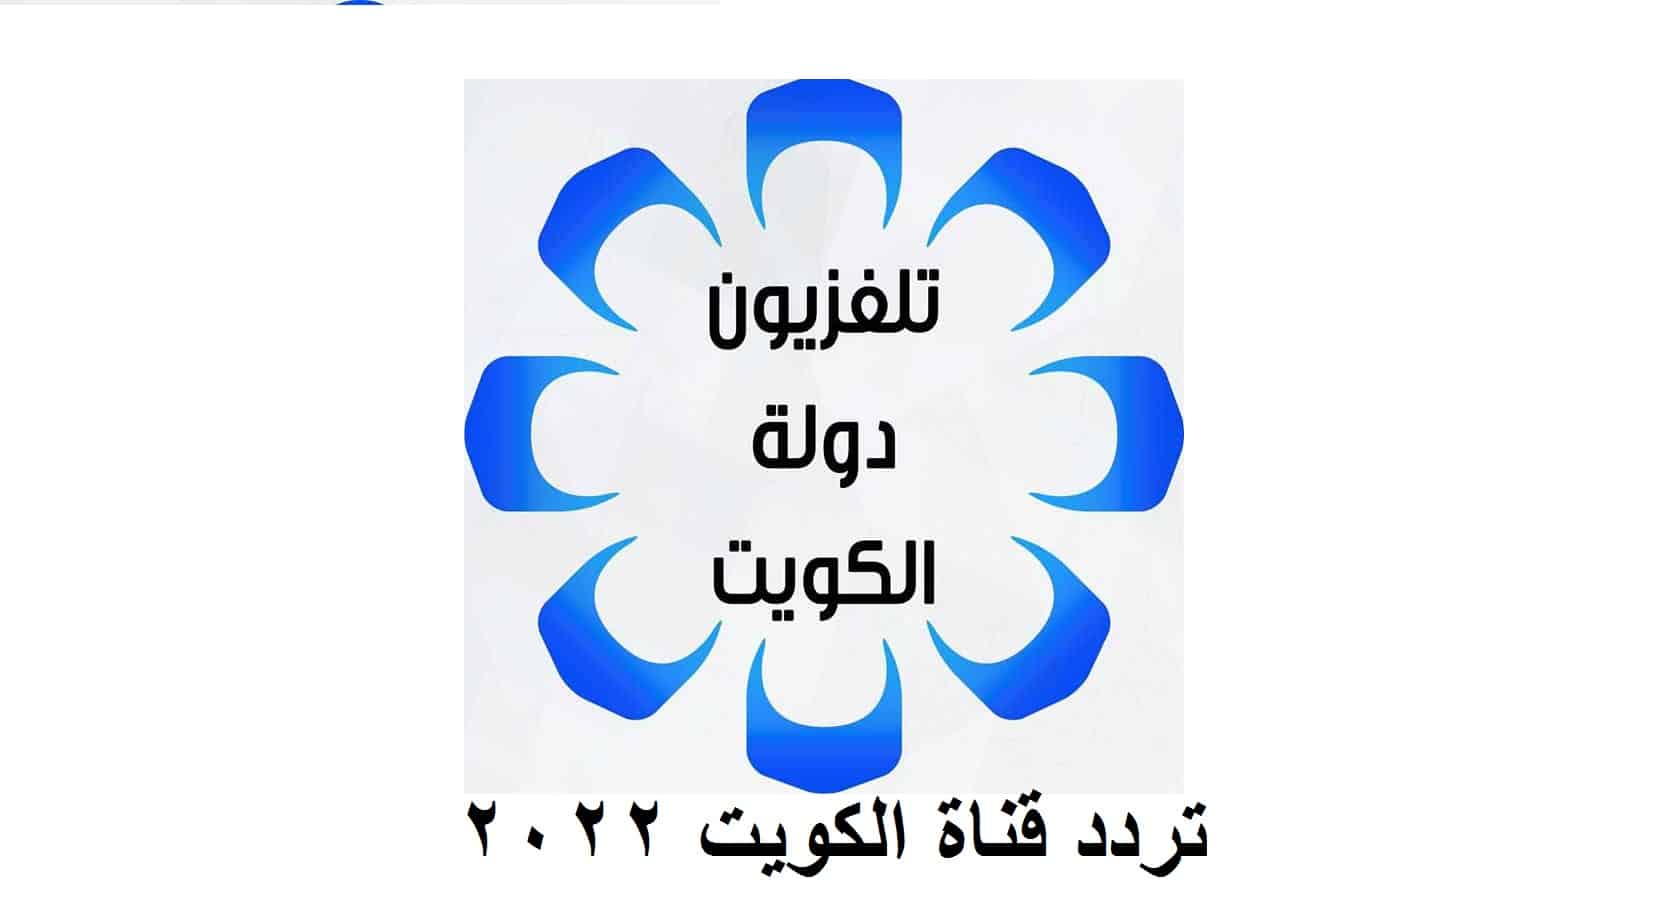 تردد قناة الكويت الجديد 2022 على النايل سات وأهم البرامج والمسلسلات